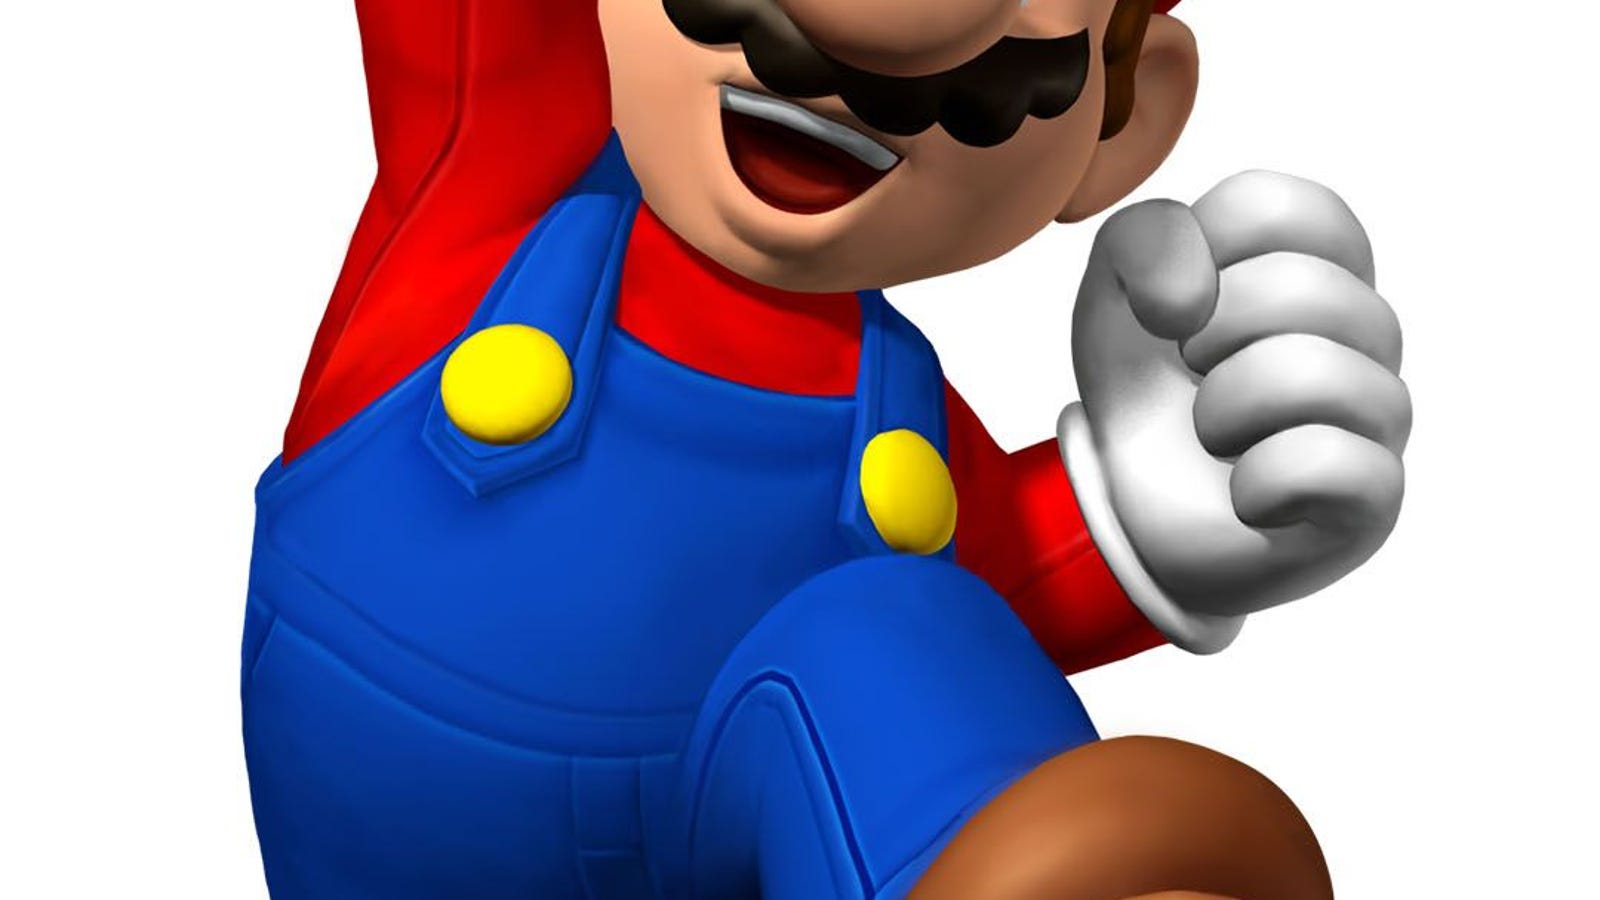 Happy Mario Day!